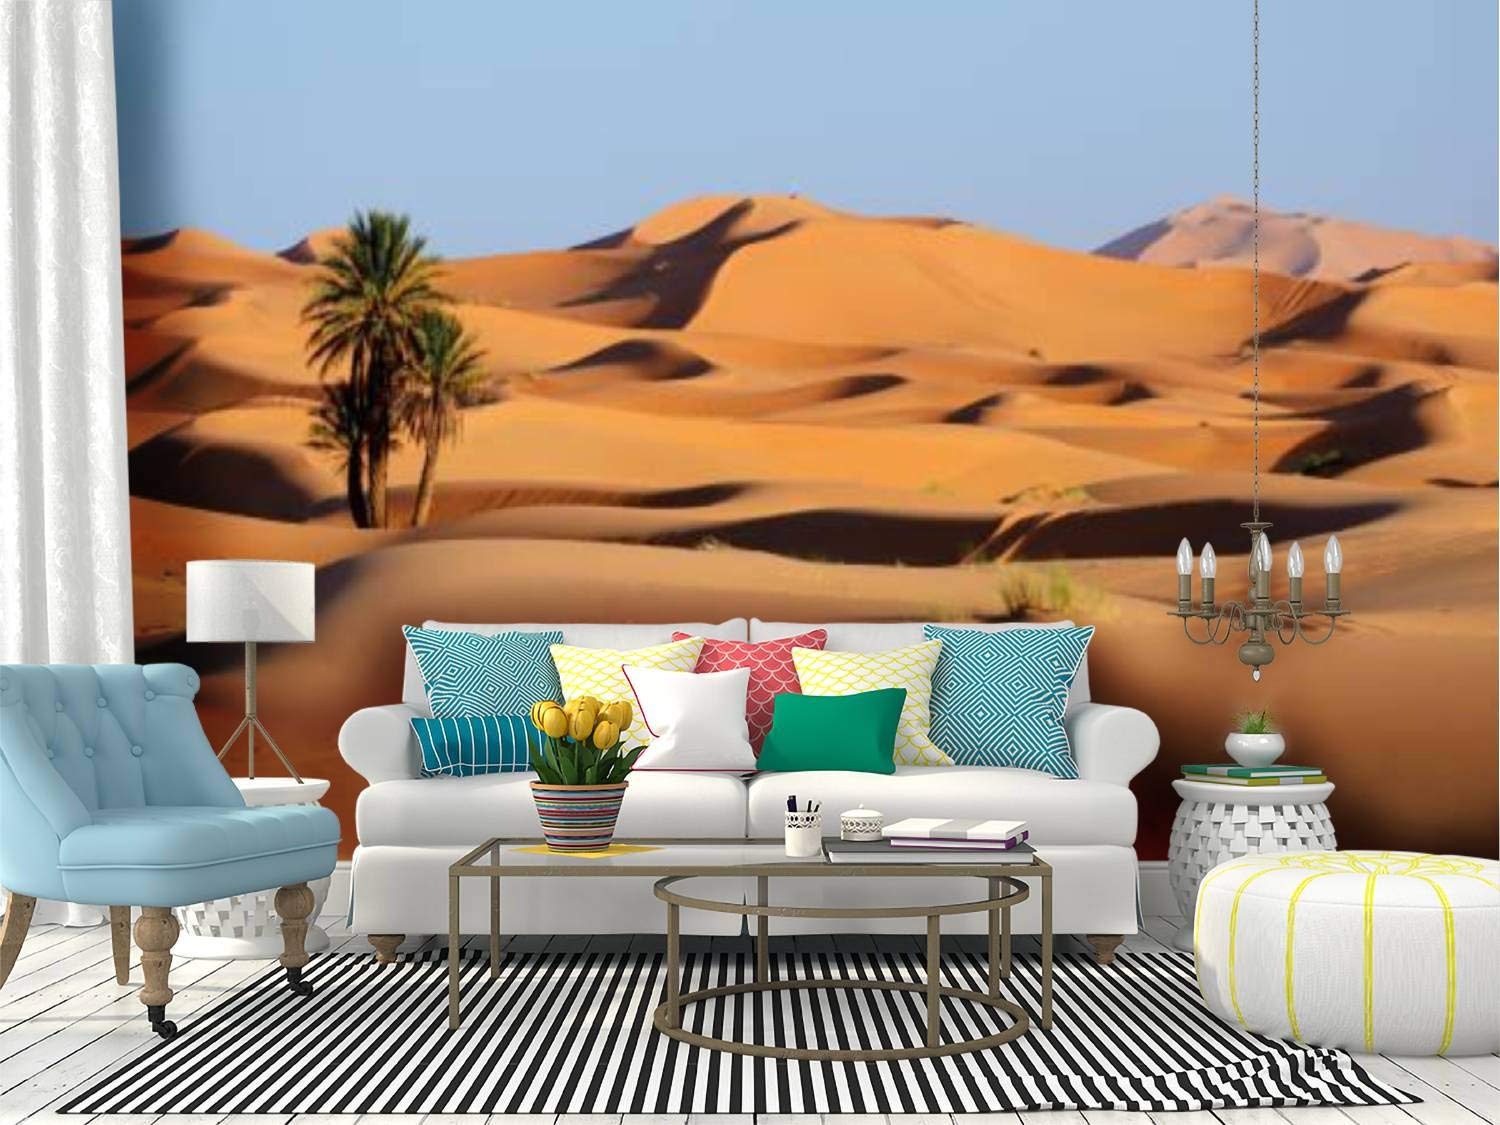 Morocco Desert Wallpapers